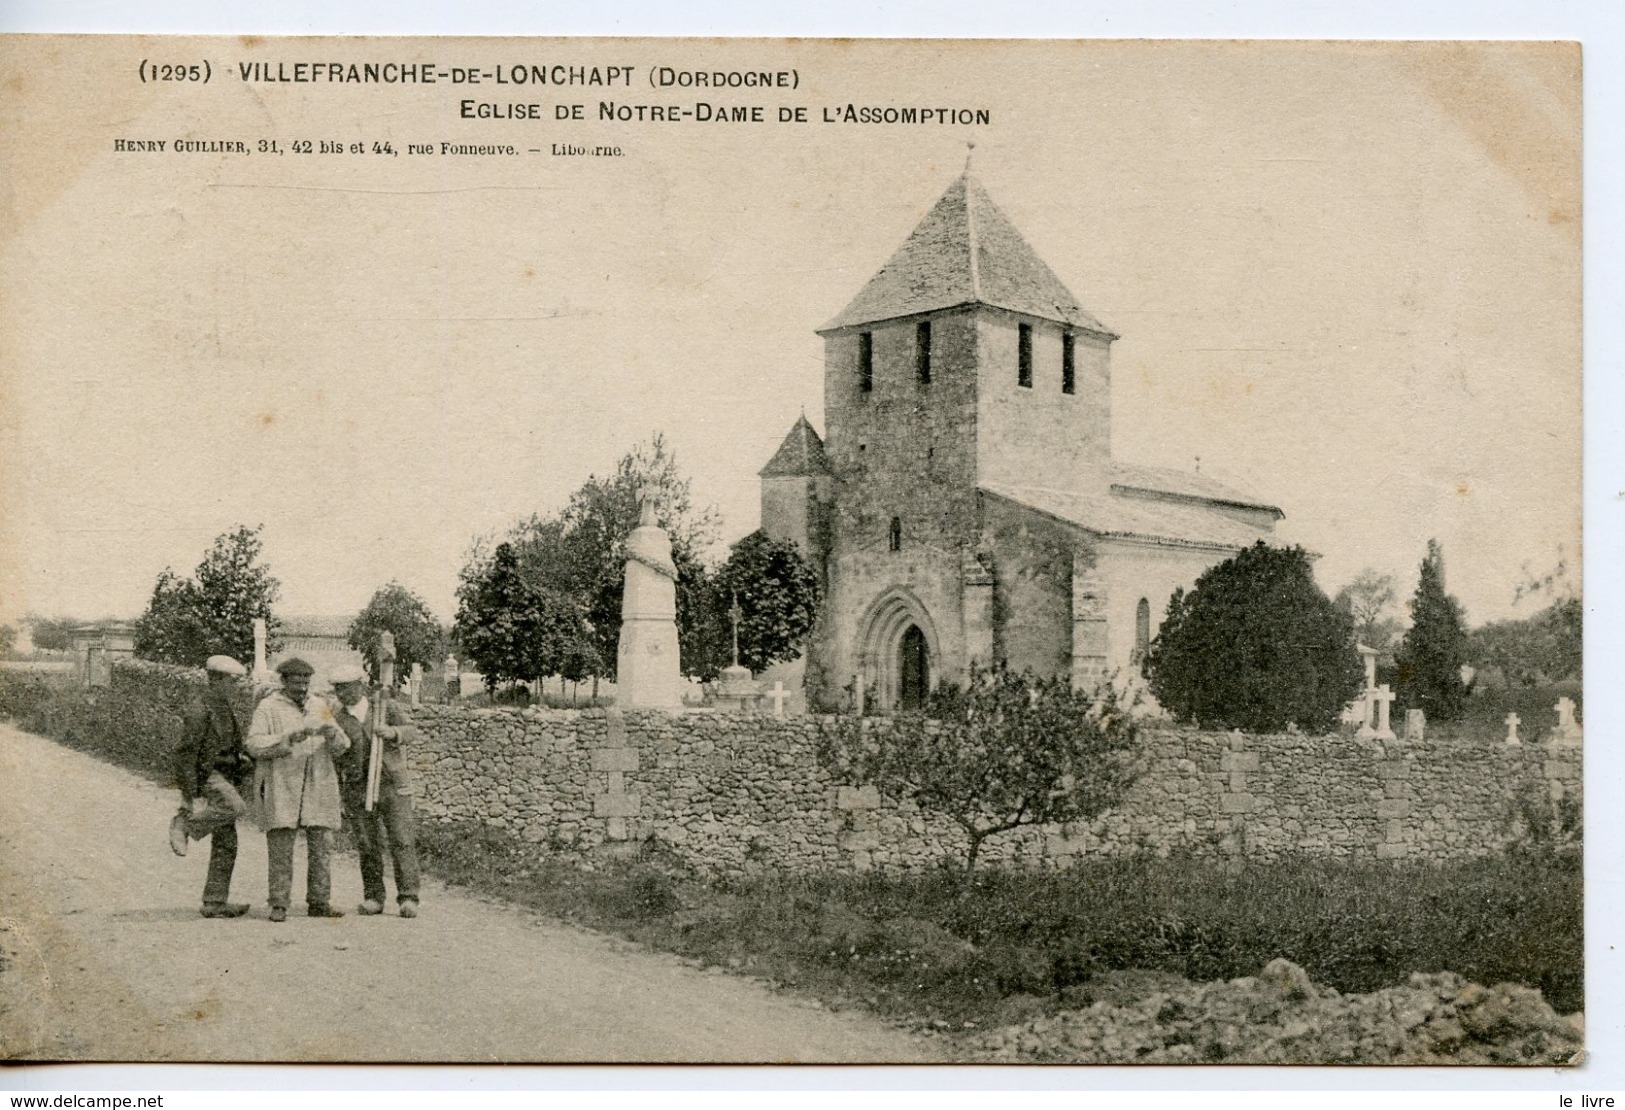 CPA 24 VILLEFRANCHE-DE-LONCHAPT. EGLISE DE NOTRE DAME DE L'ASSOMPTION 1903